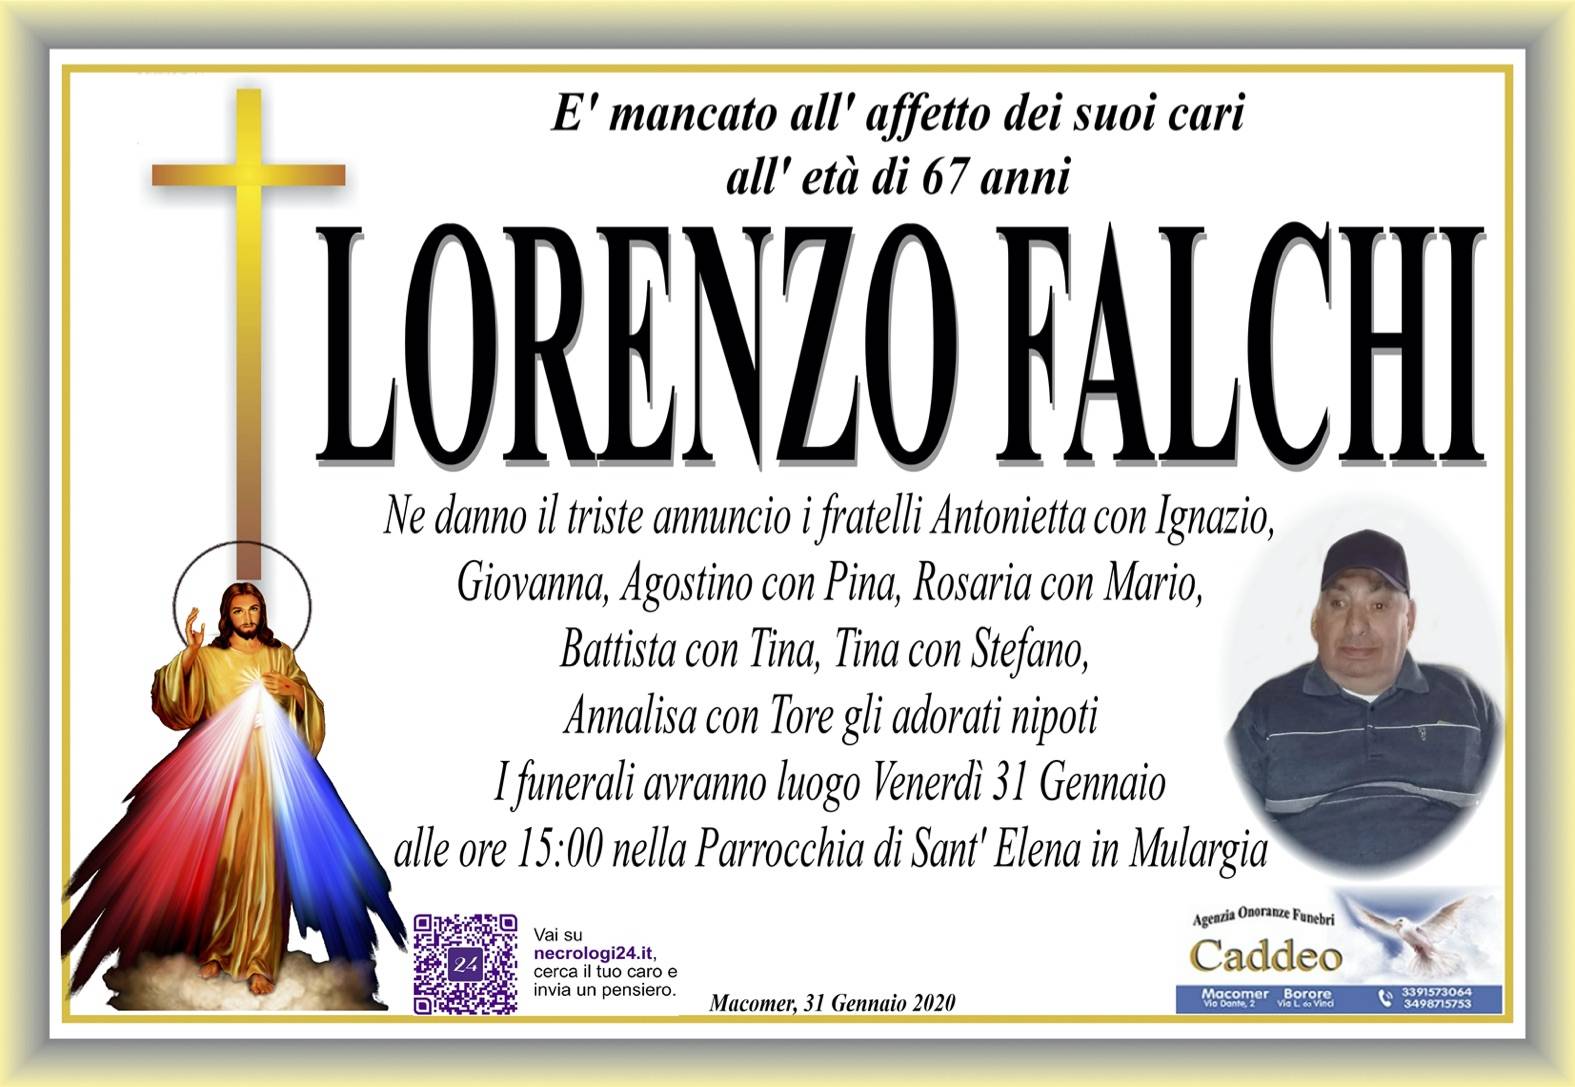 Lorenzo Falchi